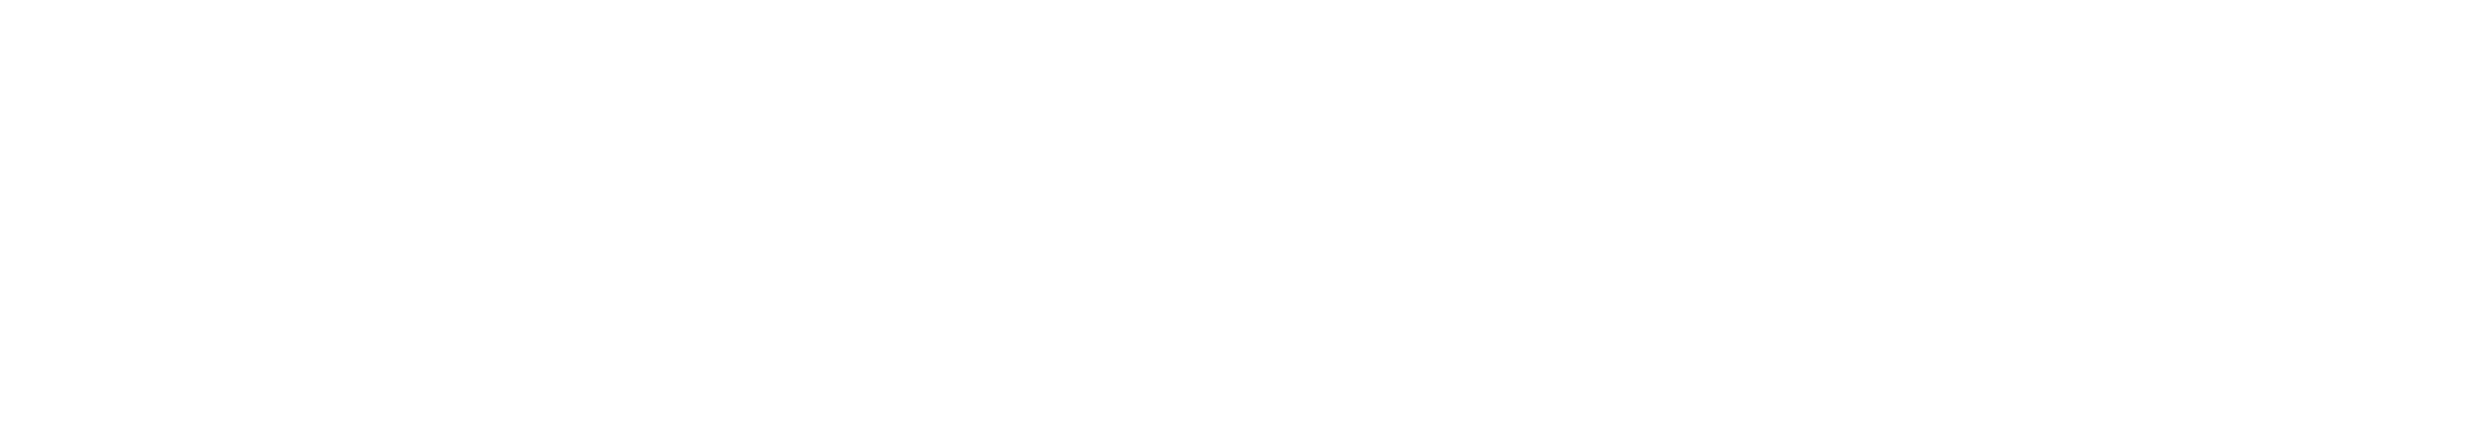 Vitrinemedia_full_logotype_Blanc